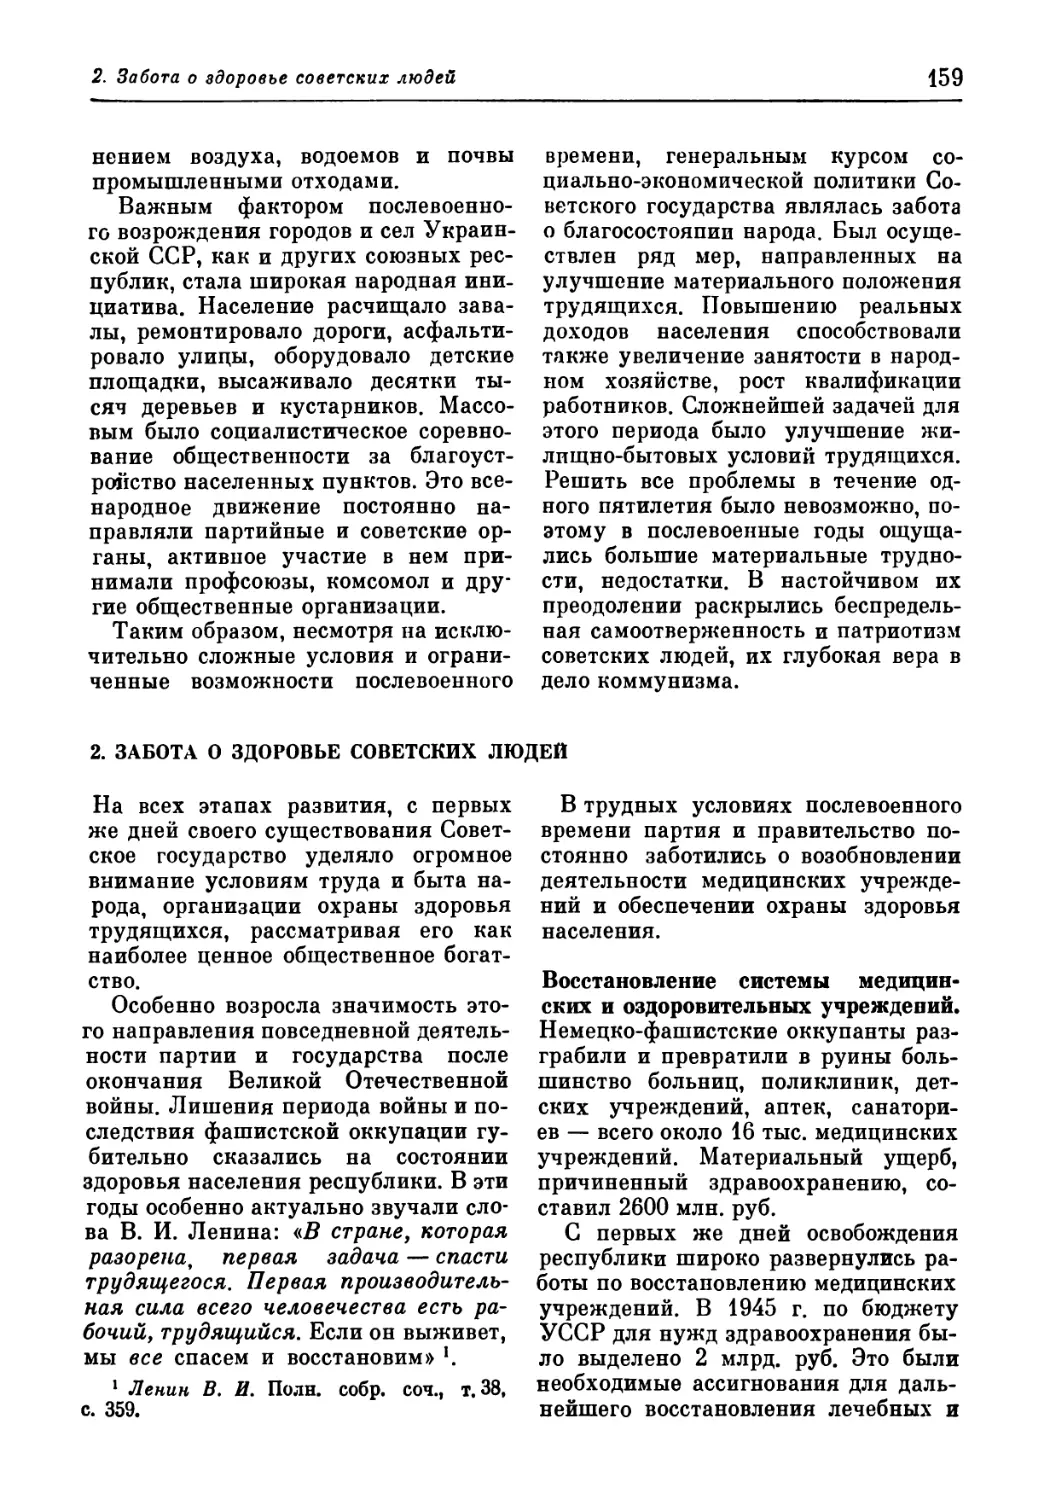 2. Забота о здоровье советских людей